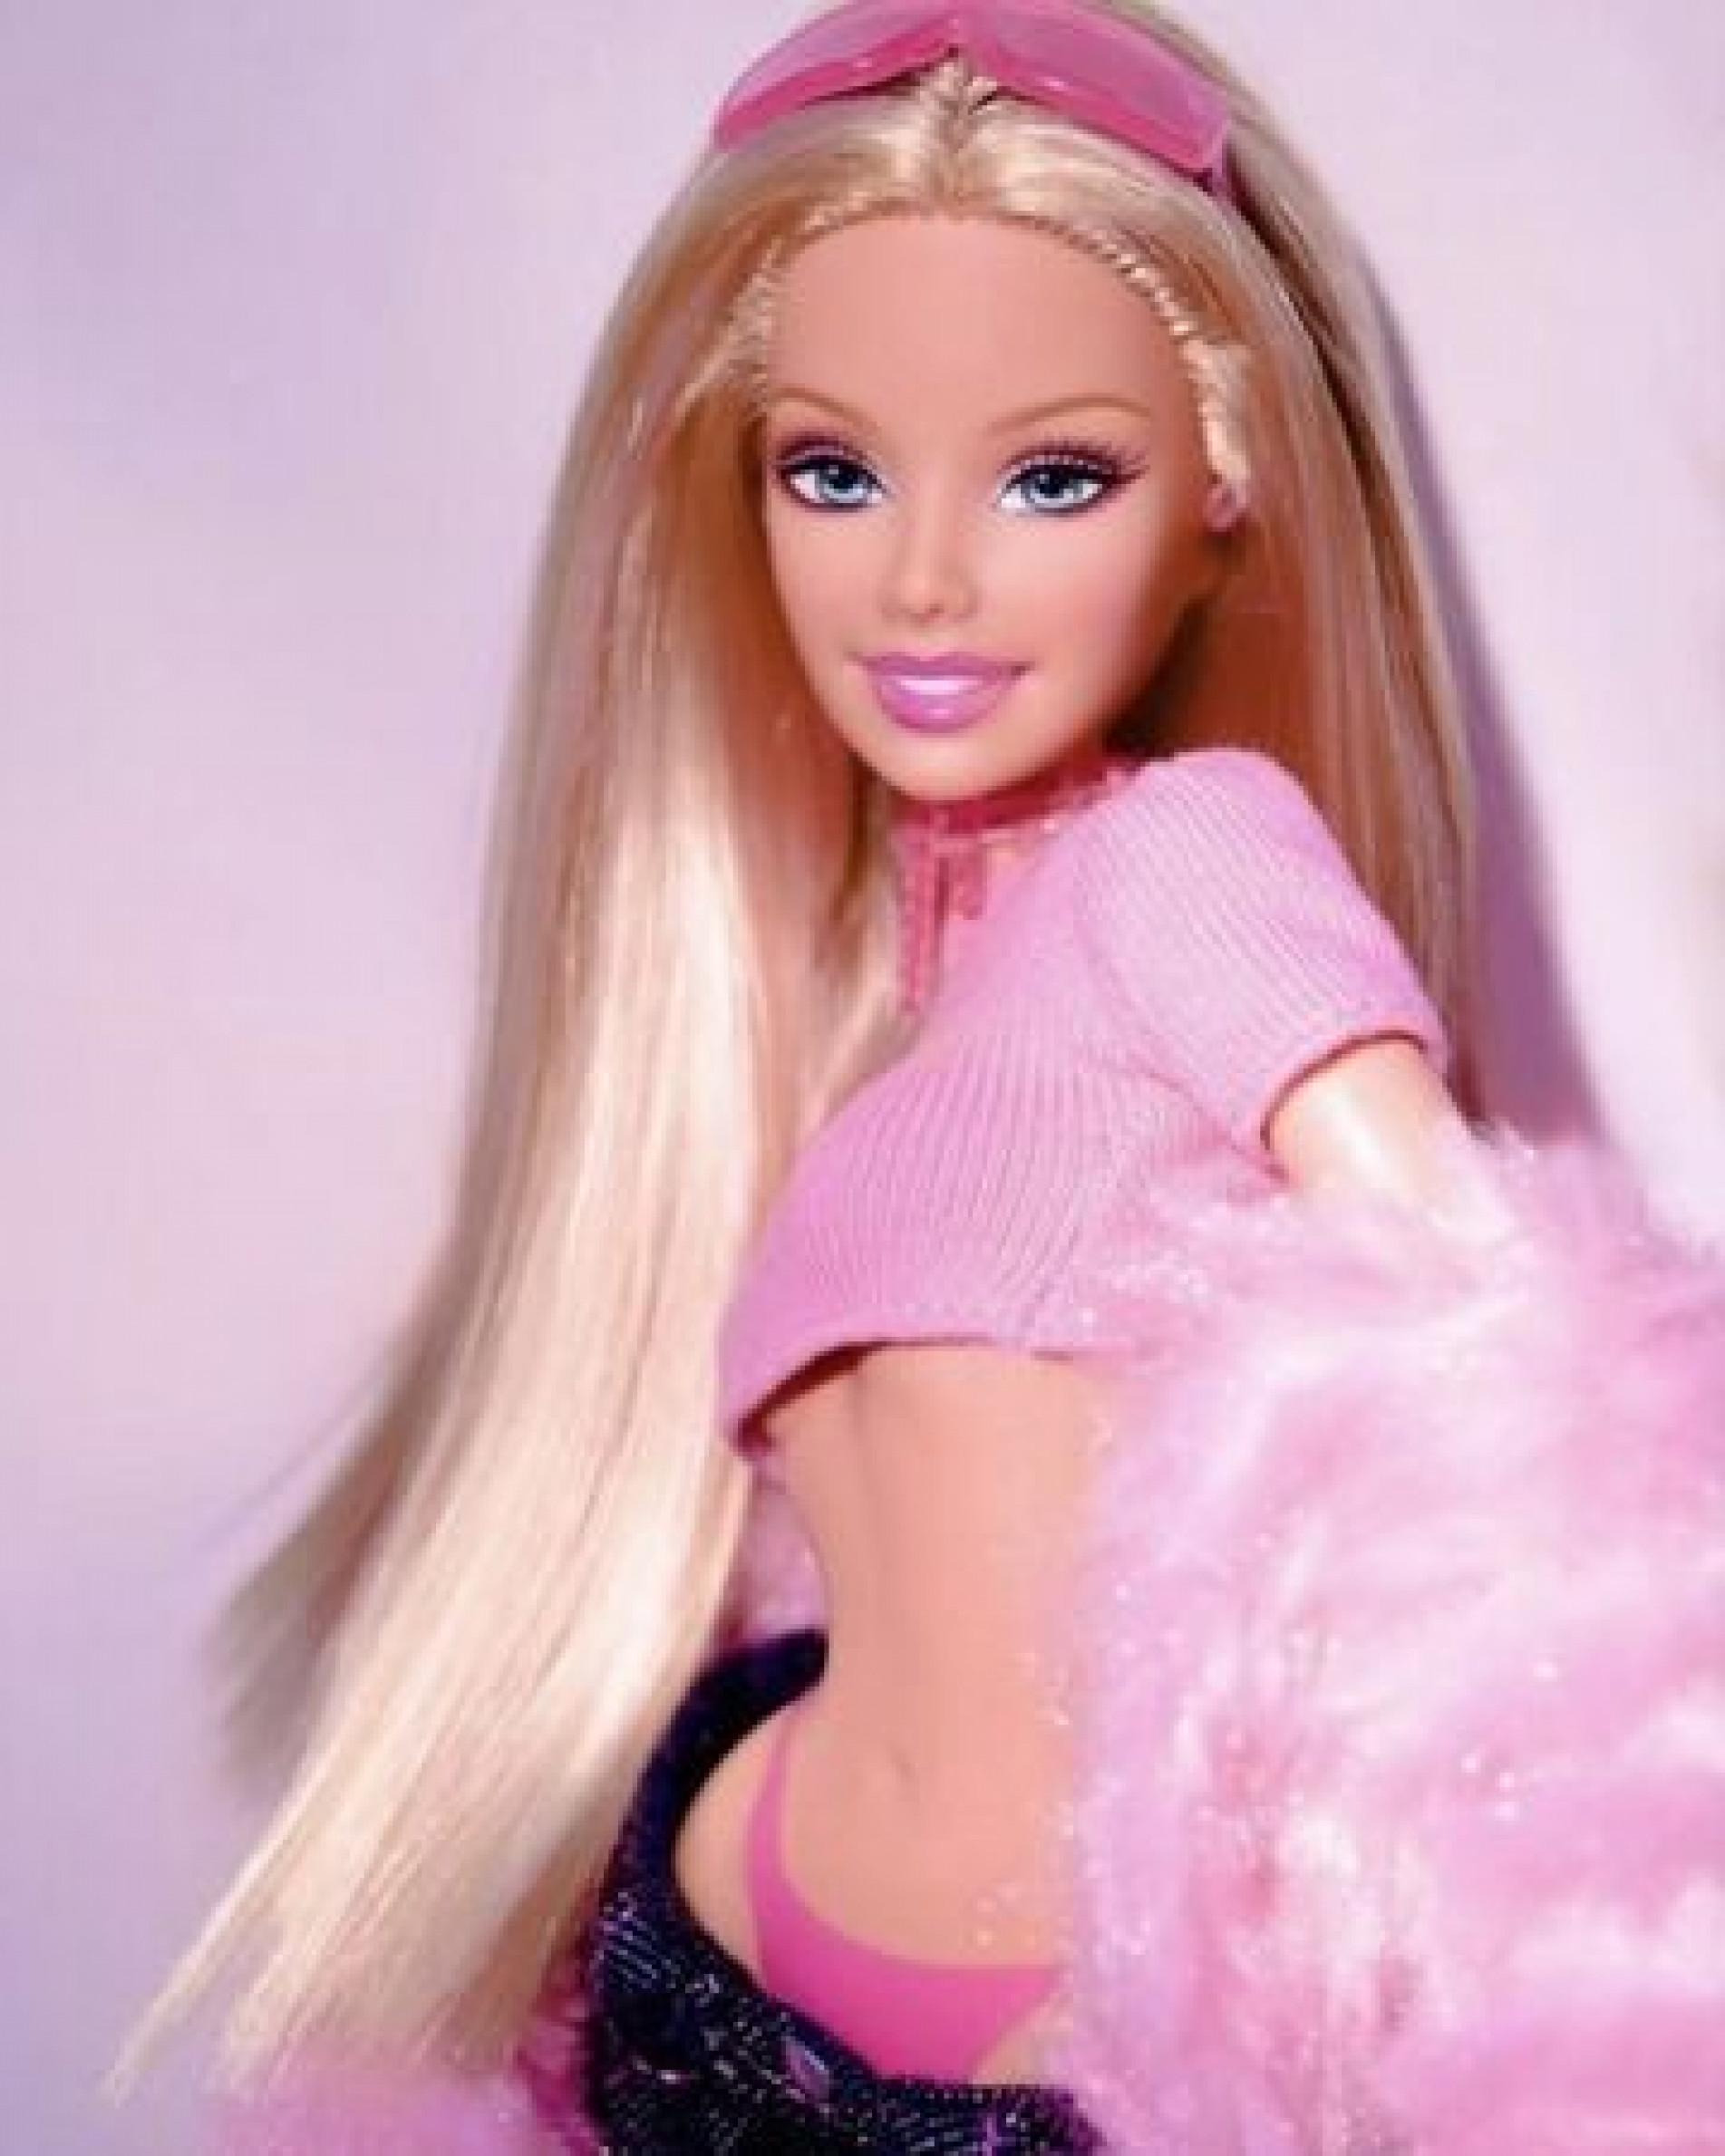 Conheça a barbiecore, moda inspirada na cor da Barbie - 01/08/2022